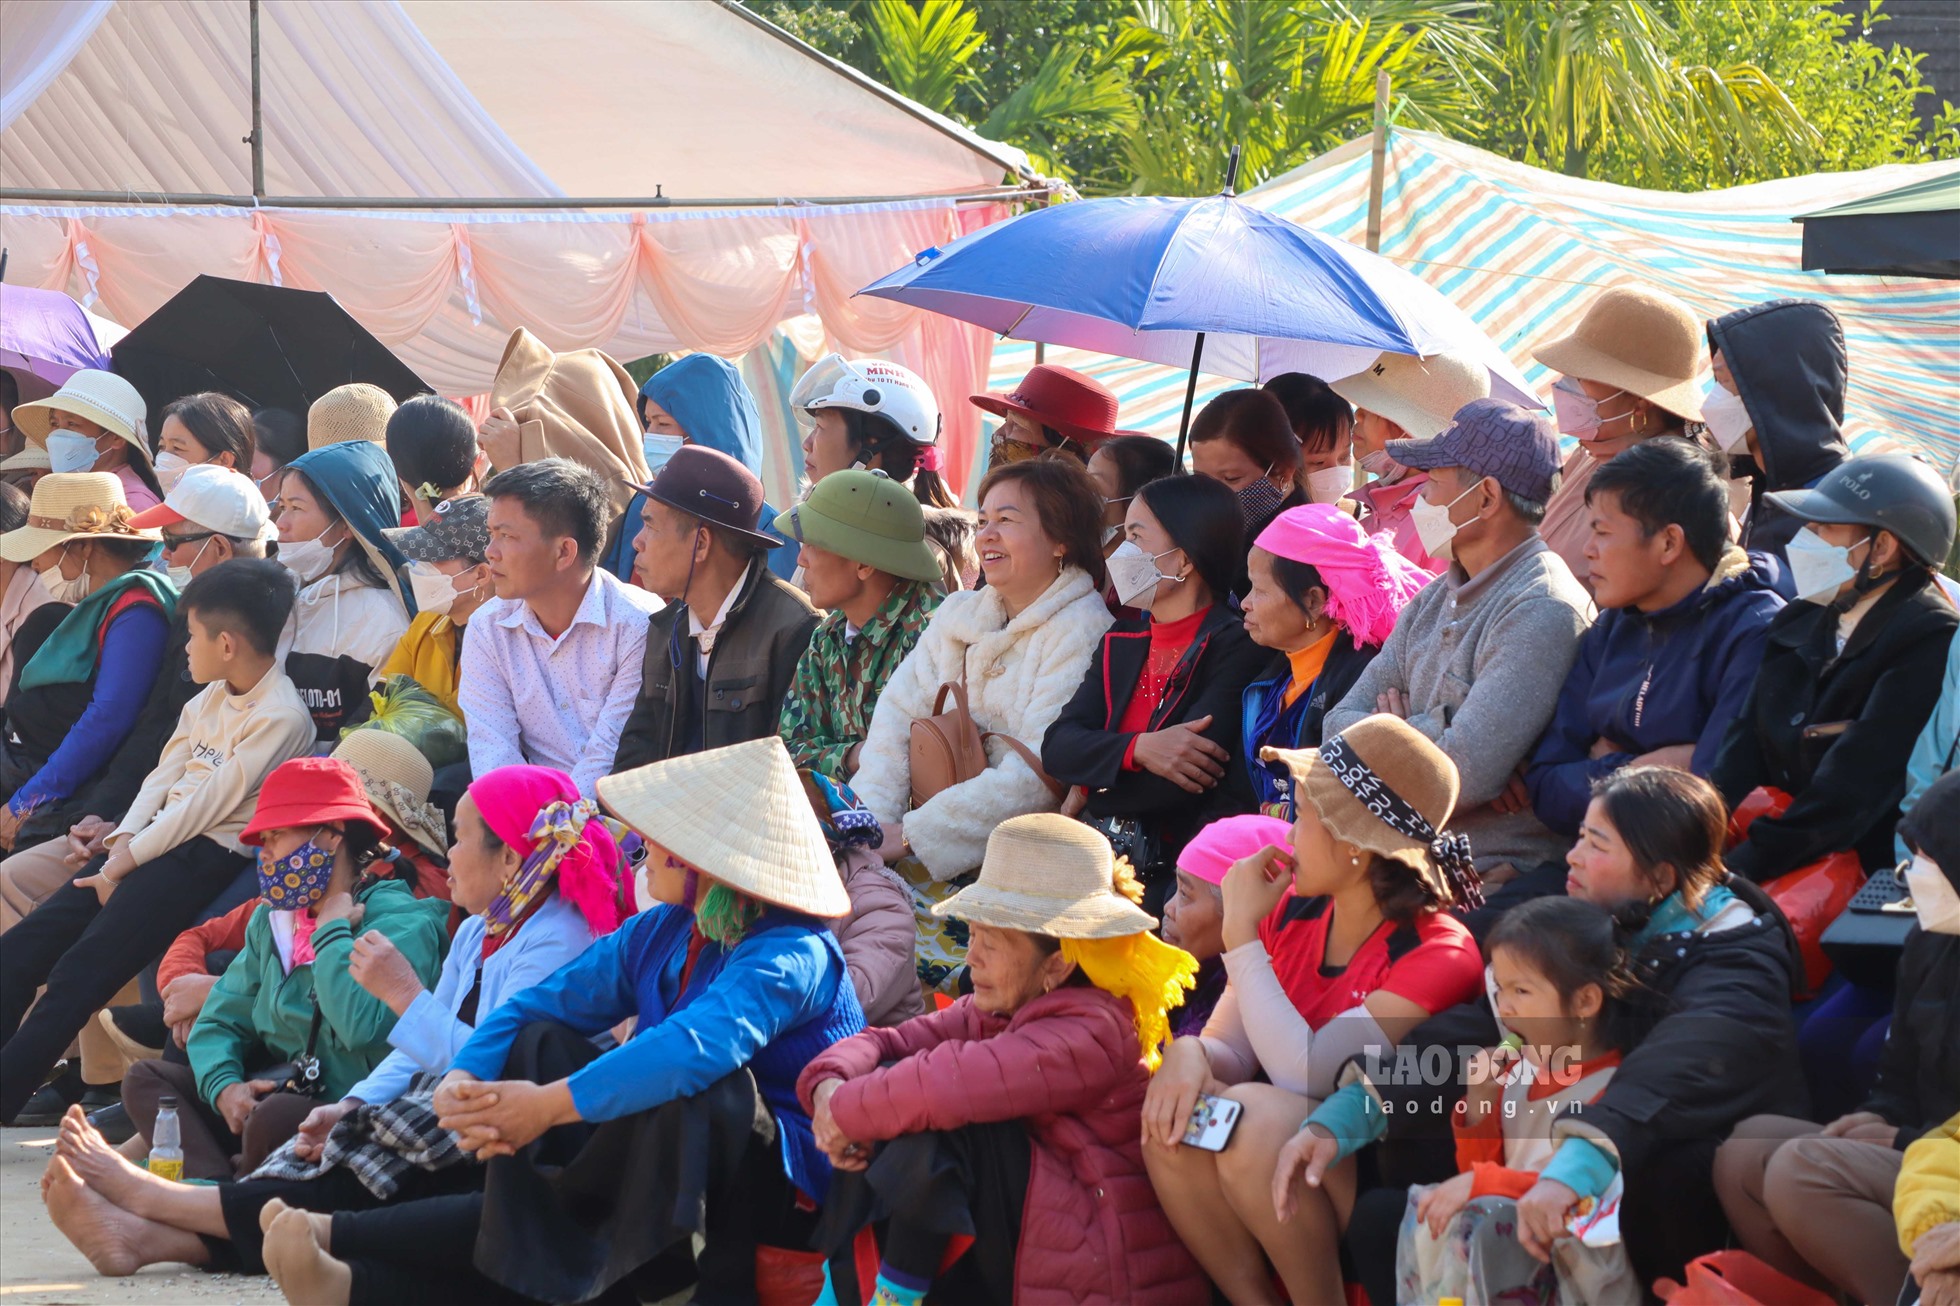 Theo ông Bùi Văn Tặng - Phó Chủ tịch UBND xã Vũ Bình, sau 2 năm không thể tổ chức do dịch bệnh, lễ hội đình Cổi năm 2023 trở lại và thu hút được rất nhiều người dân cũng như du khách đến tham dự. Tính đến hết ngày đầu tiên tổ chức, lễ hội đã đón khoảng trên một vạn người.